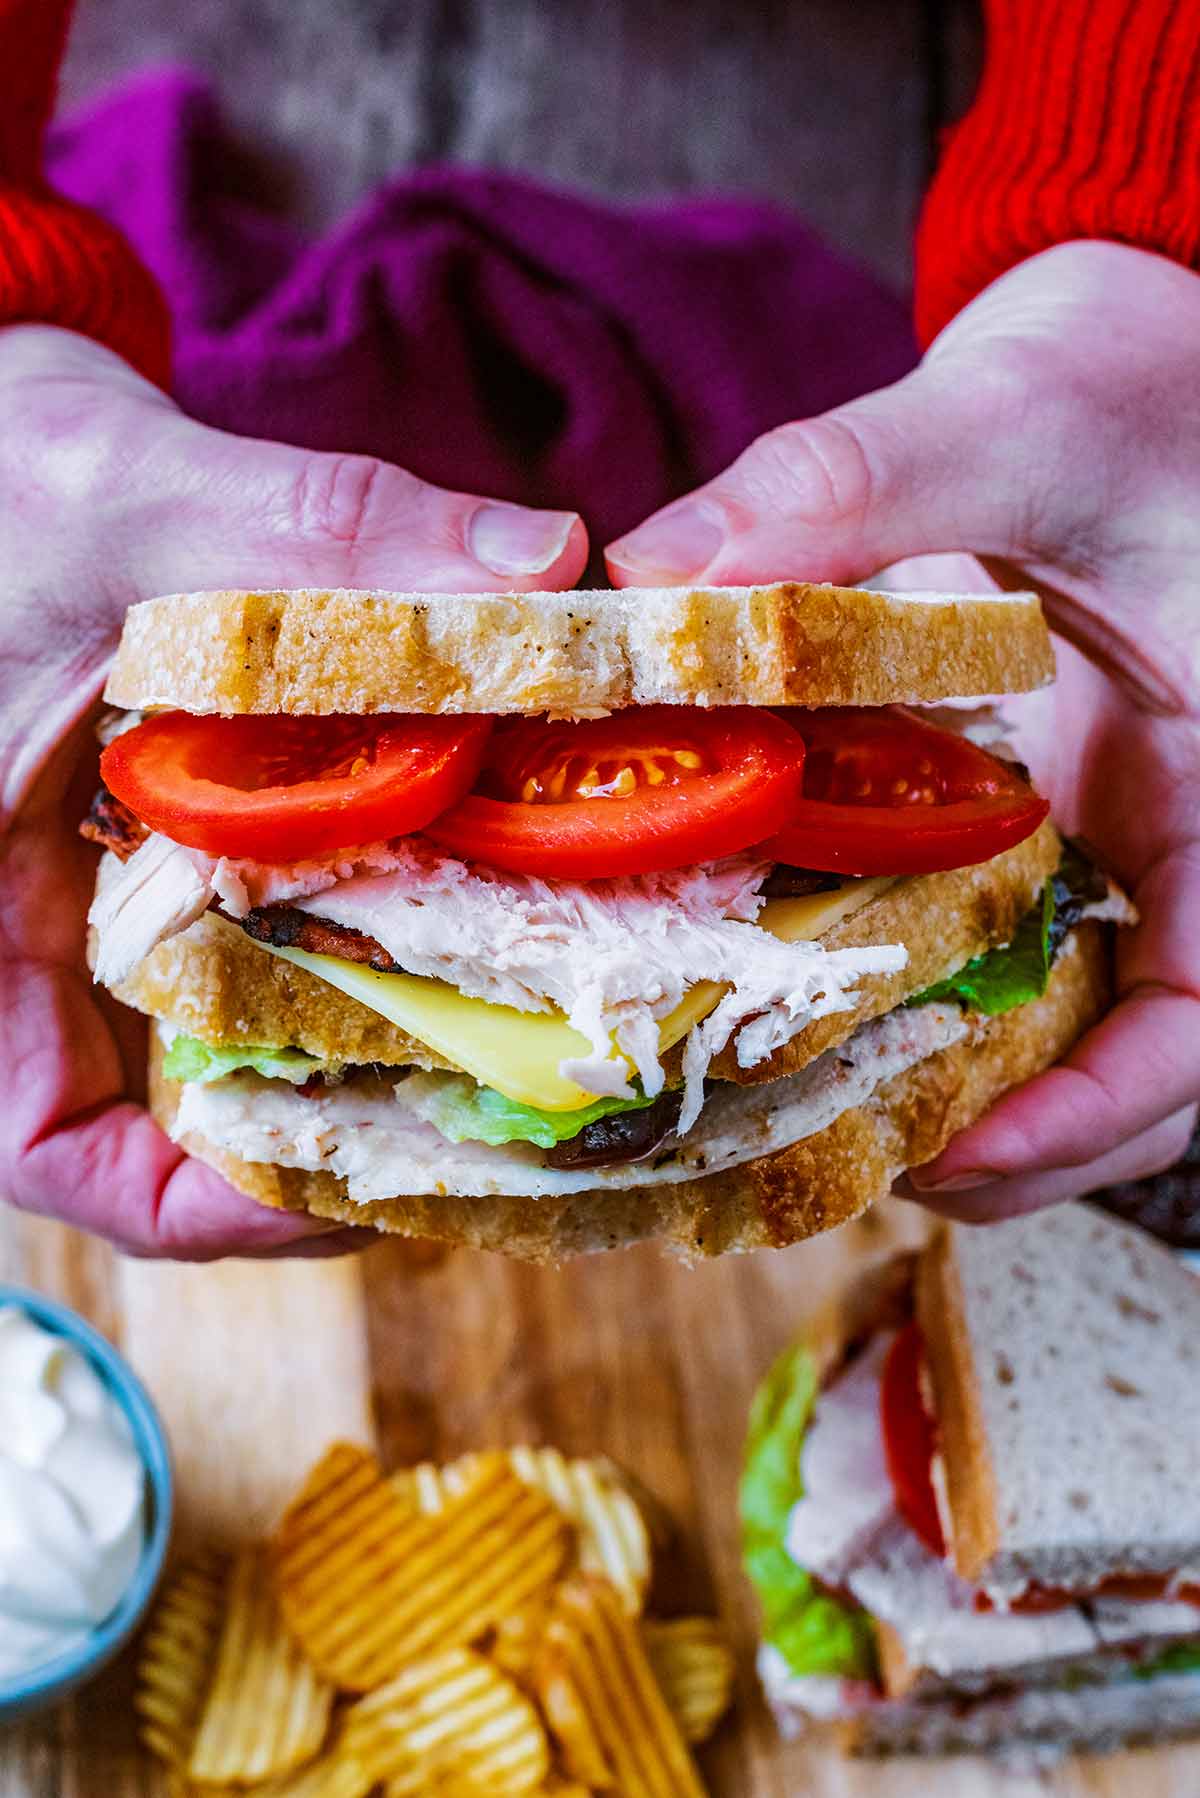 Two hands holding a double decker turkey sandwich.